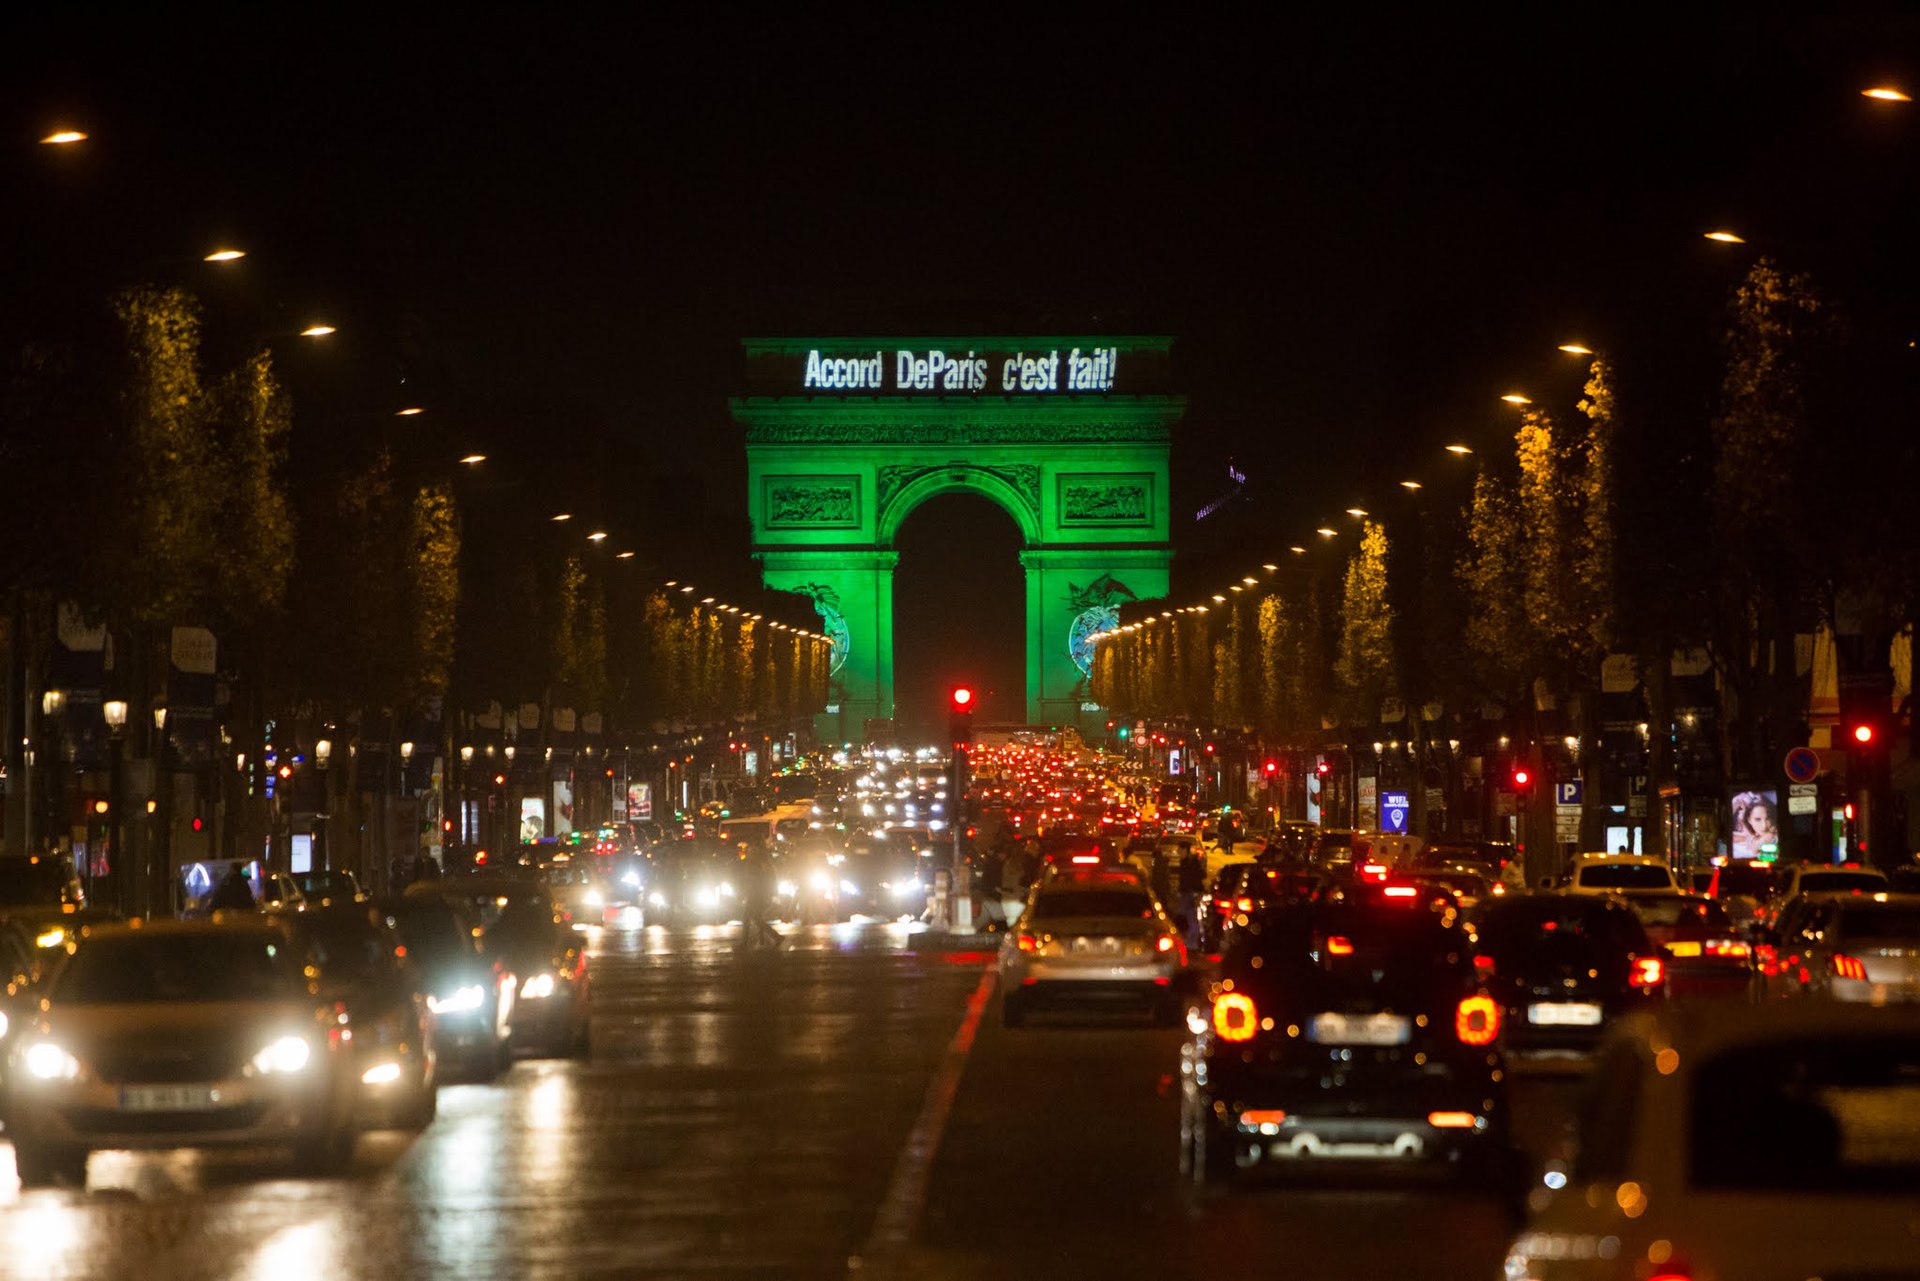 De Arc de Triomphe is groen verlicht met de tekst ‘Accord De Paris c’est fait!’, 2016. (Beeld: Jean-Baptiste Gurliat)